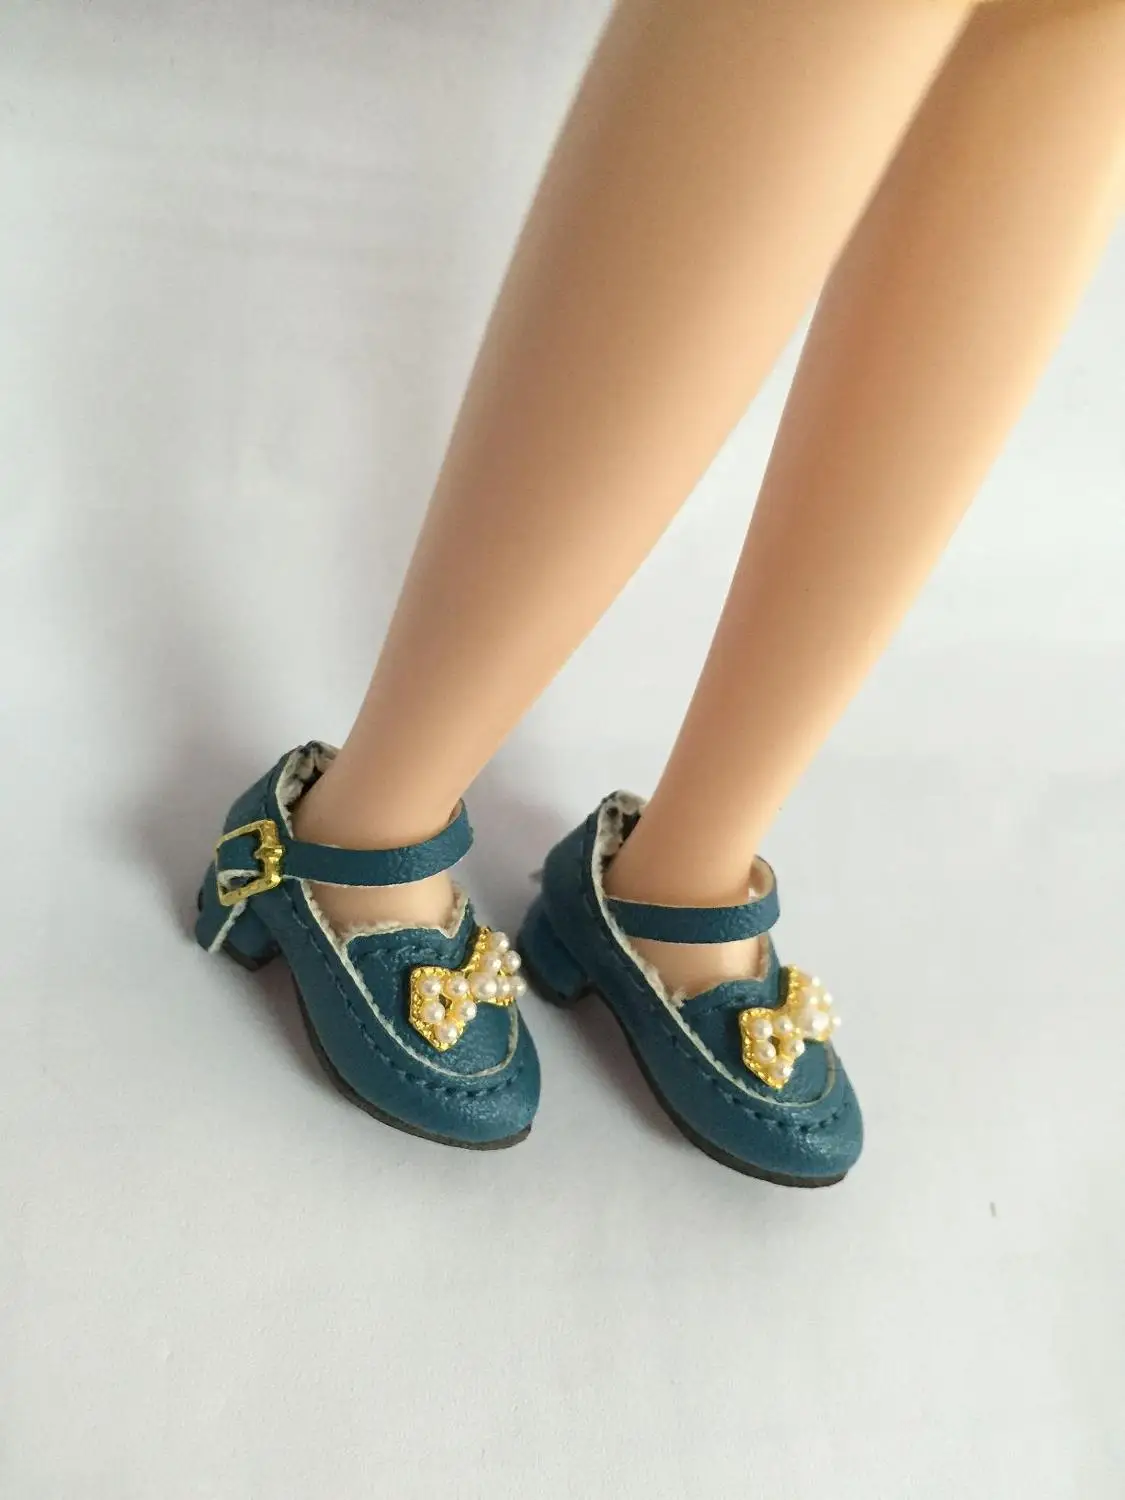 Куклы обувь для blyth Azone куклы OB кукла licca и т. д. Длина: 2,8 см повседневная обувь на плоской подошве - Цвет: blue